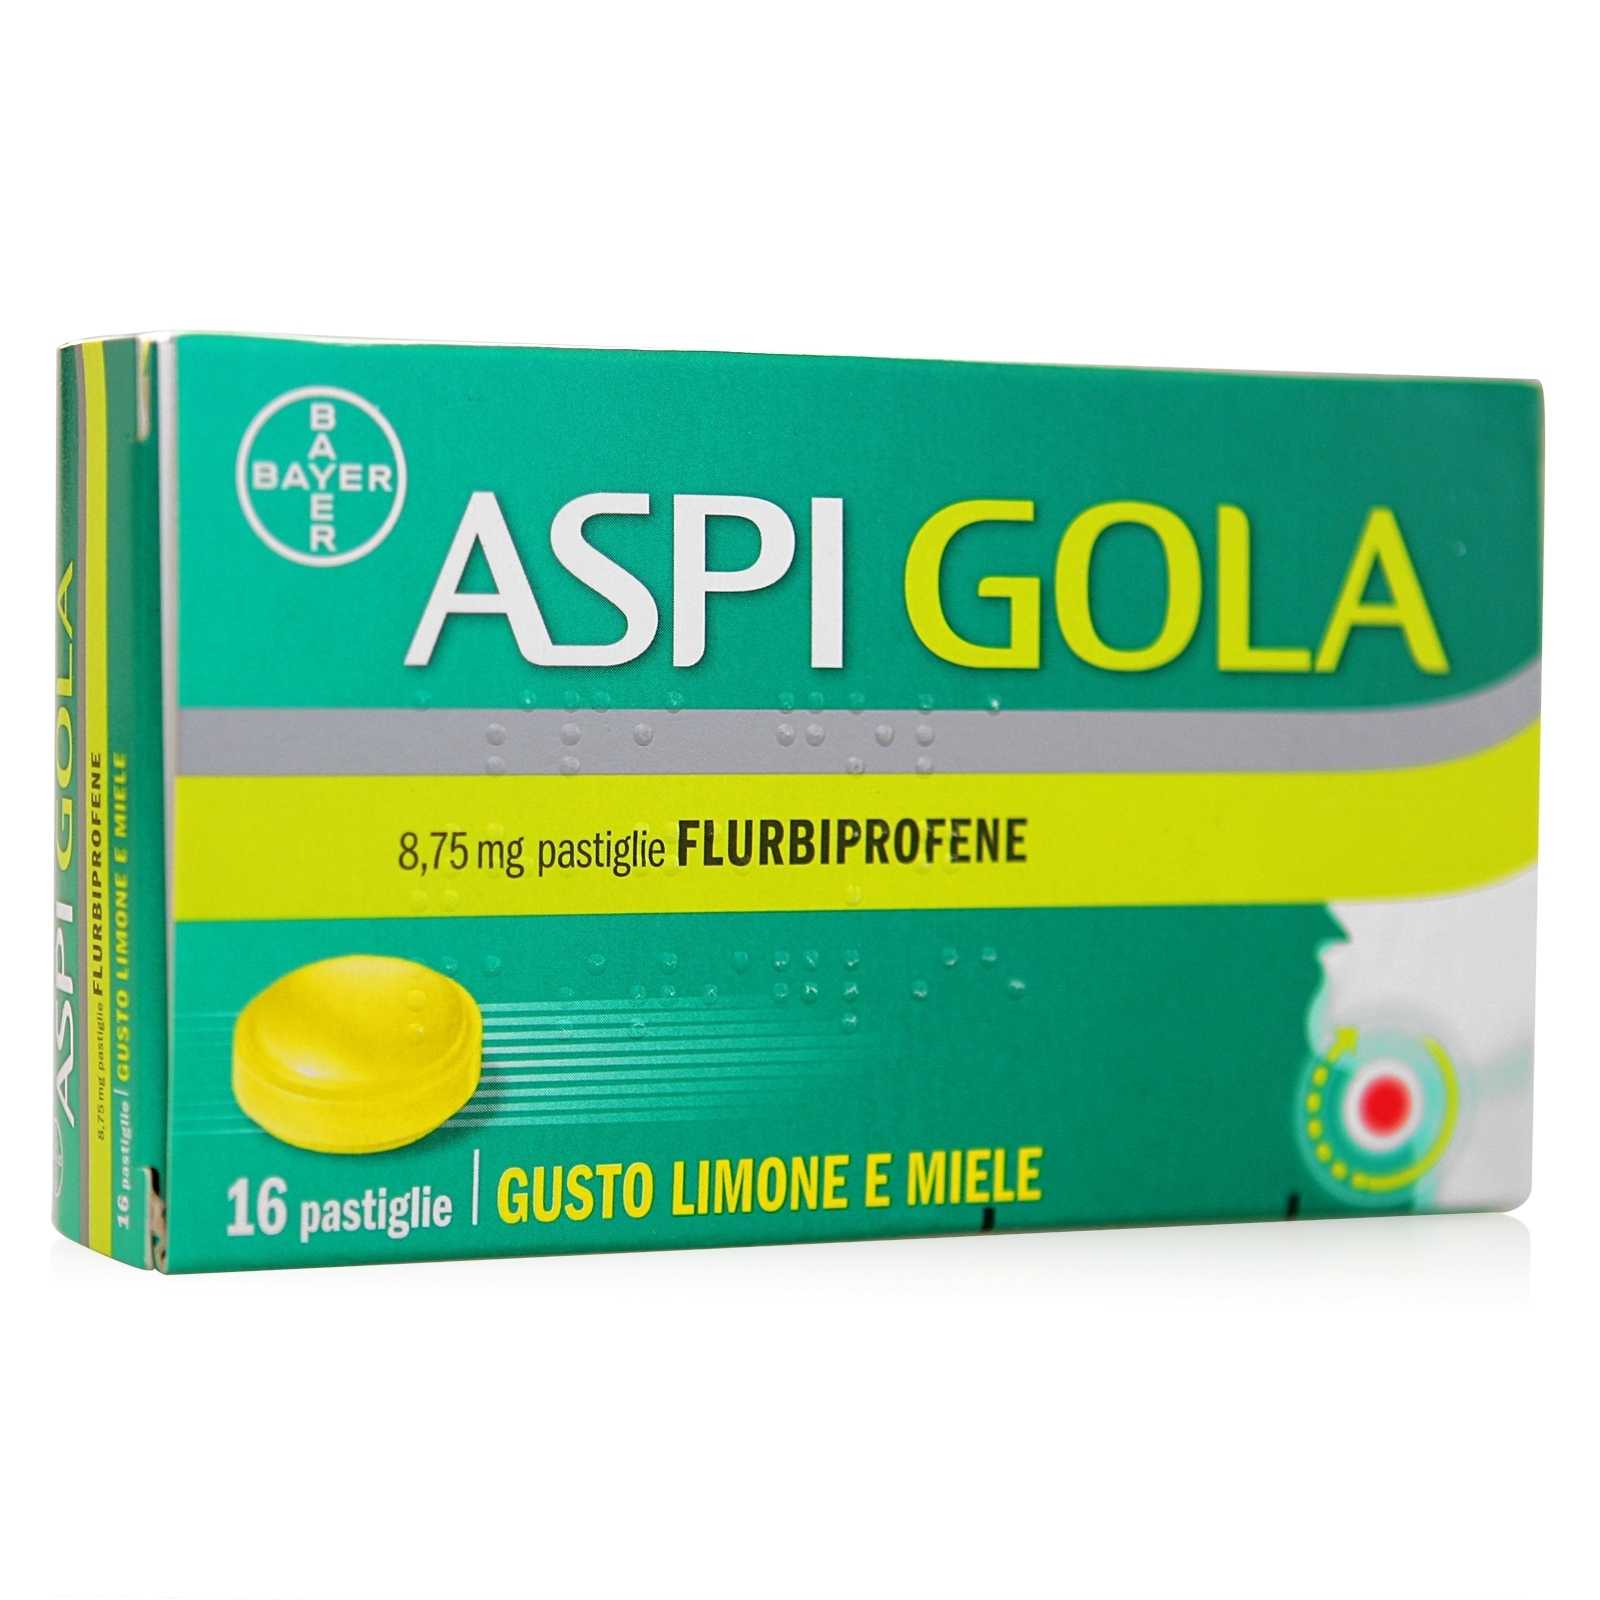 Aspirina - Aspi Gola - 16 pastiglie